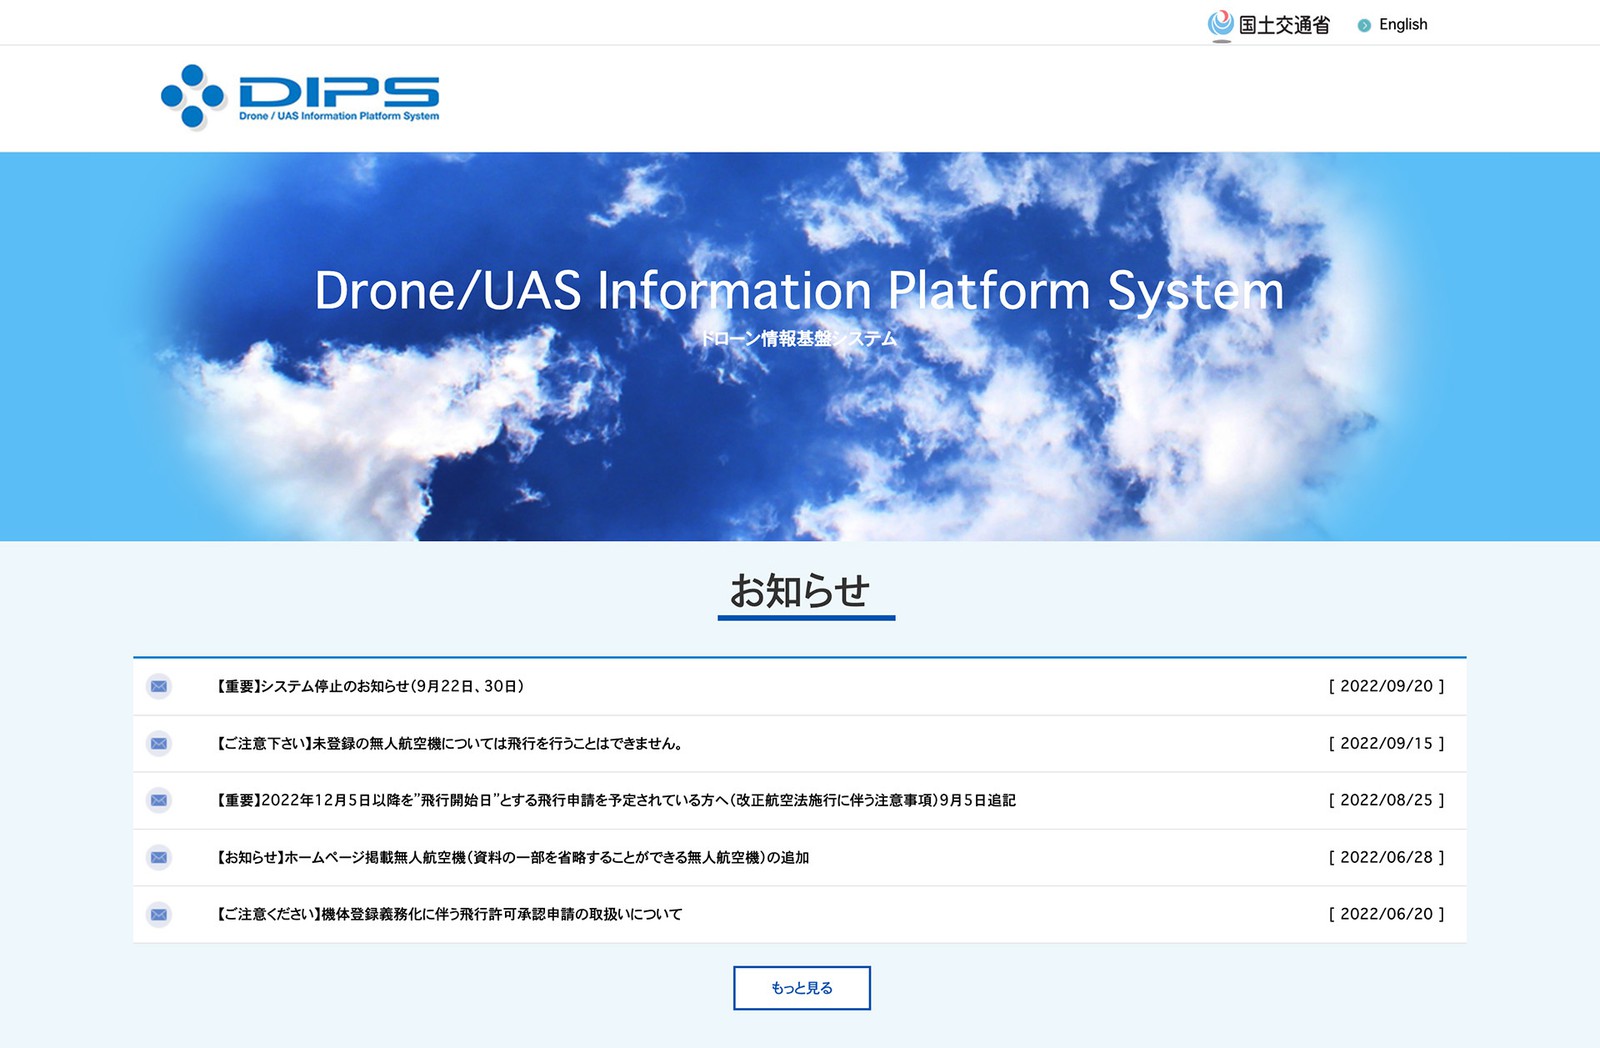 国交省のドローン専用サイト「Drone/UAS Information Platform System（略称DIPS）」。こちらから申請を行います。